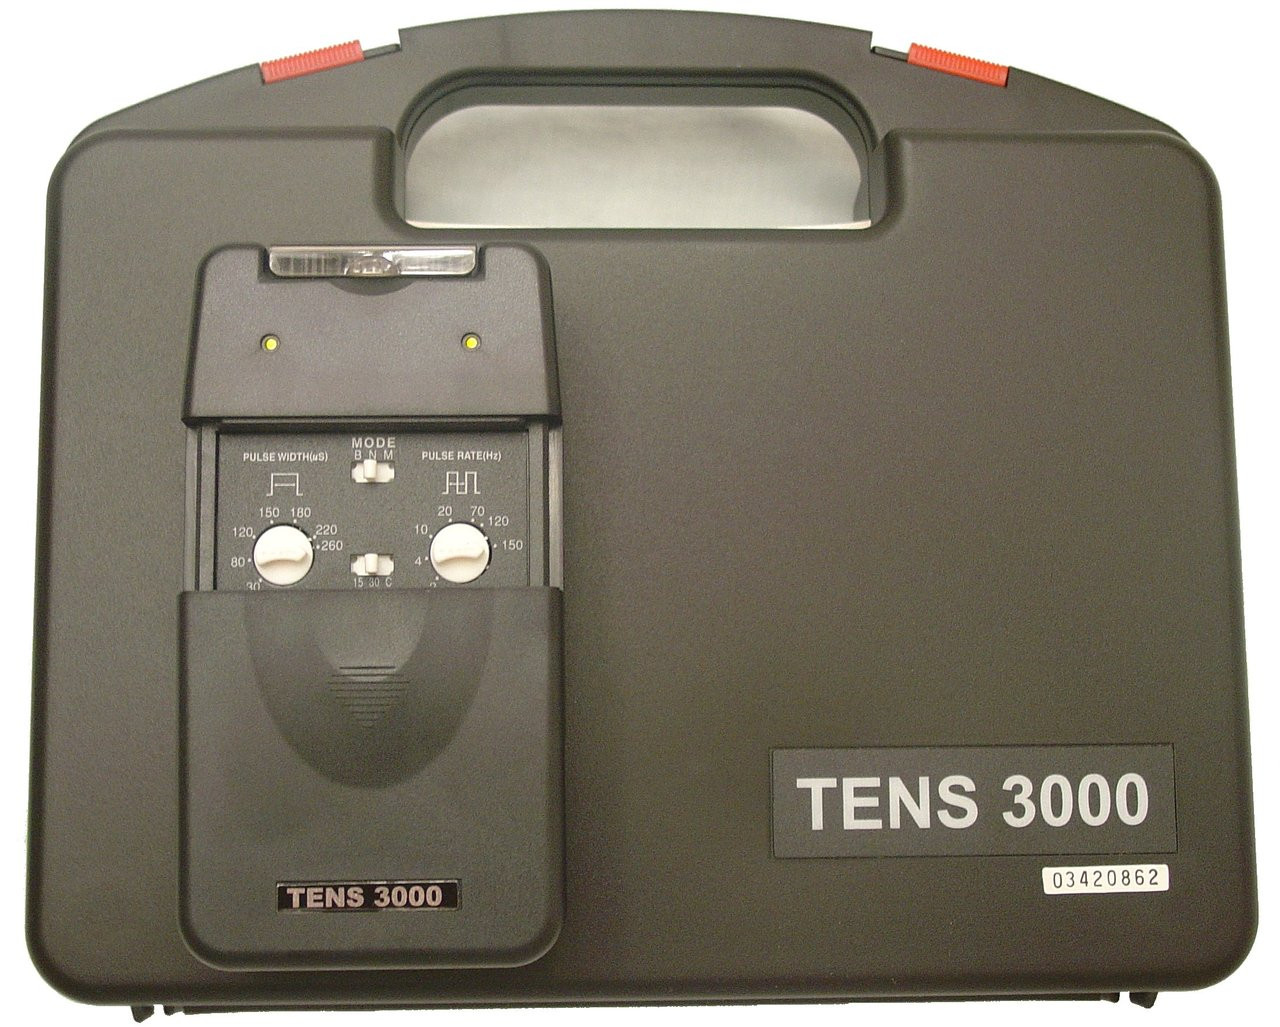 TENS 3000 - TENS Unit Review and Comparison 